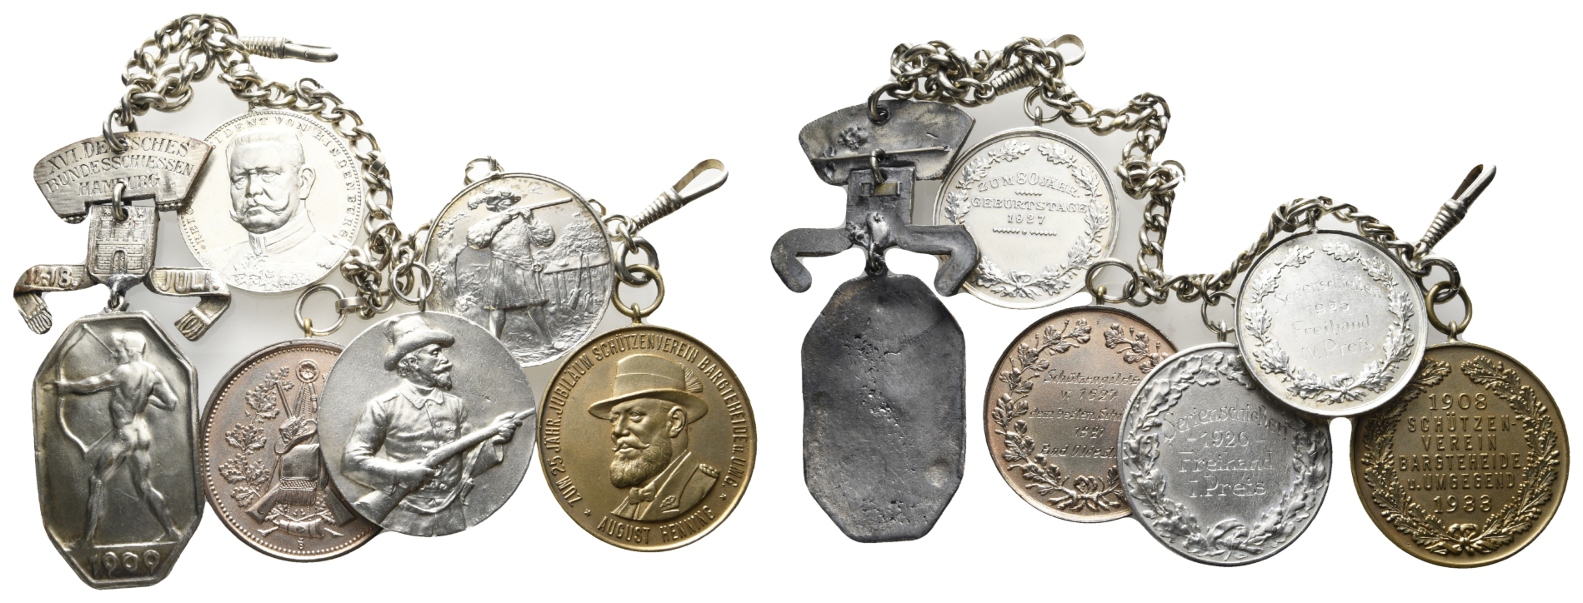  Schützenkette mit 5 Medaillen (1921/1925/1926/1927/1933) sowie ein Schießabzeichen 1909   